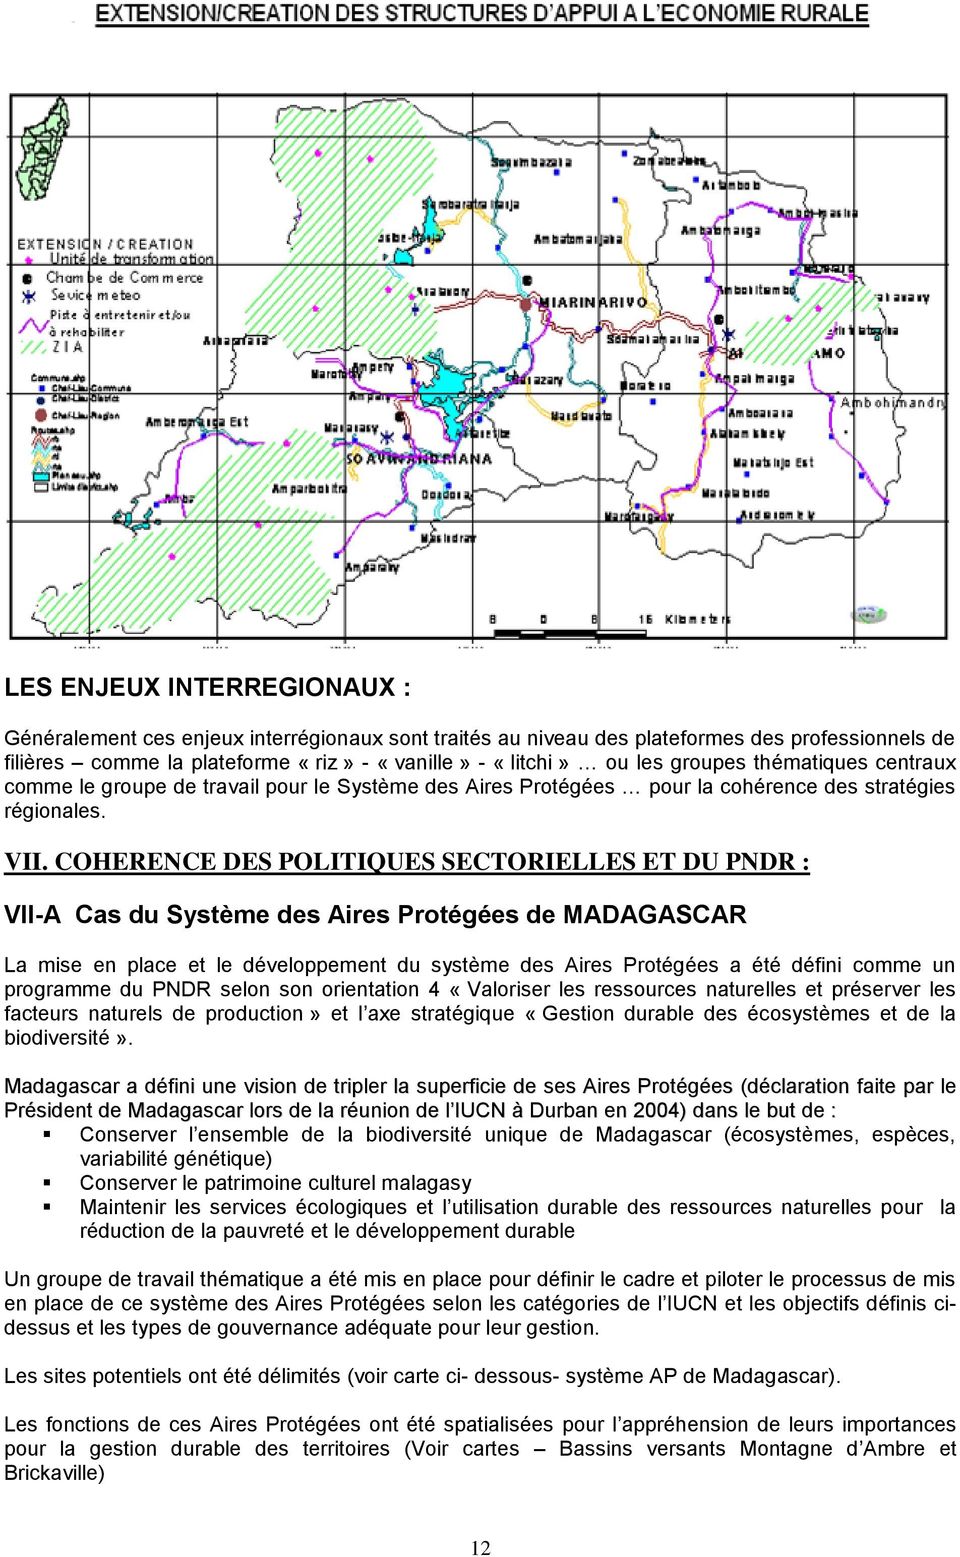 COHERENCE DES POLITIQUES SECTORIELLES ET DU PNDR : VII-A Cas du Système des Aires Protégées de MADAGASCAR La mise en place et le développement du système des Aires Protégées a été défini comme un